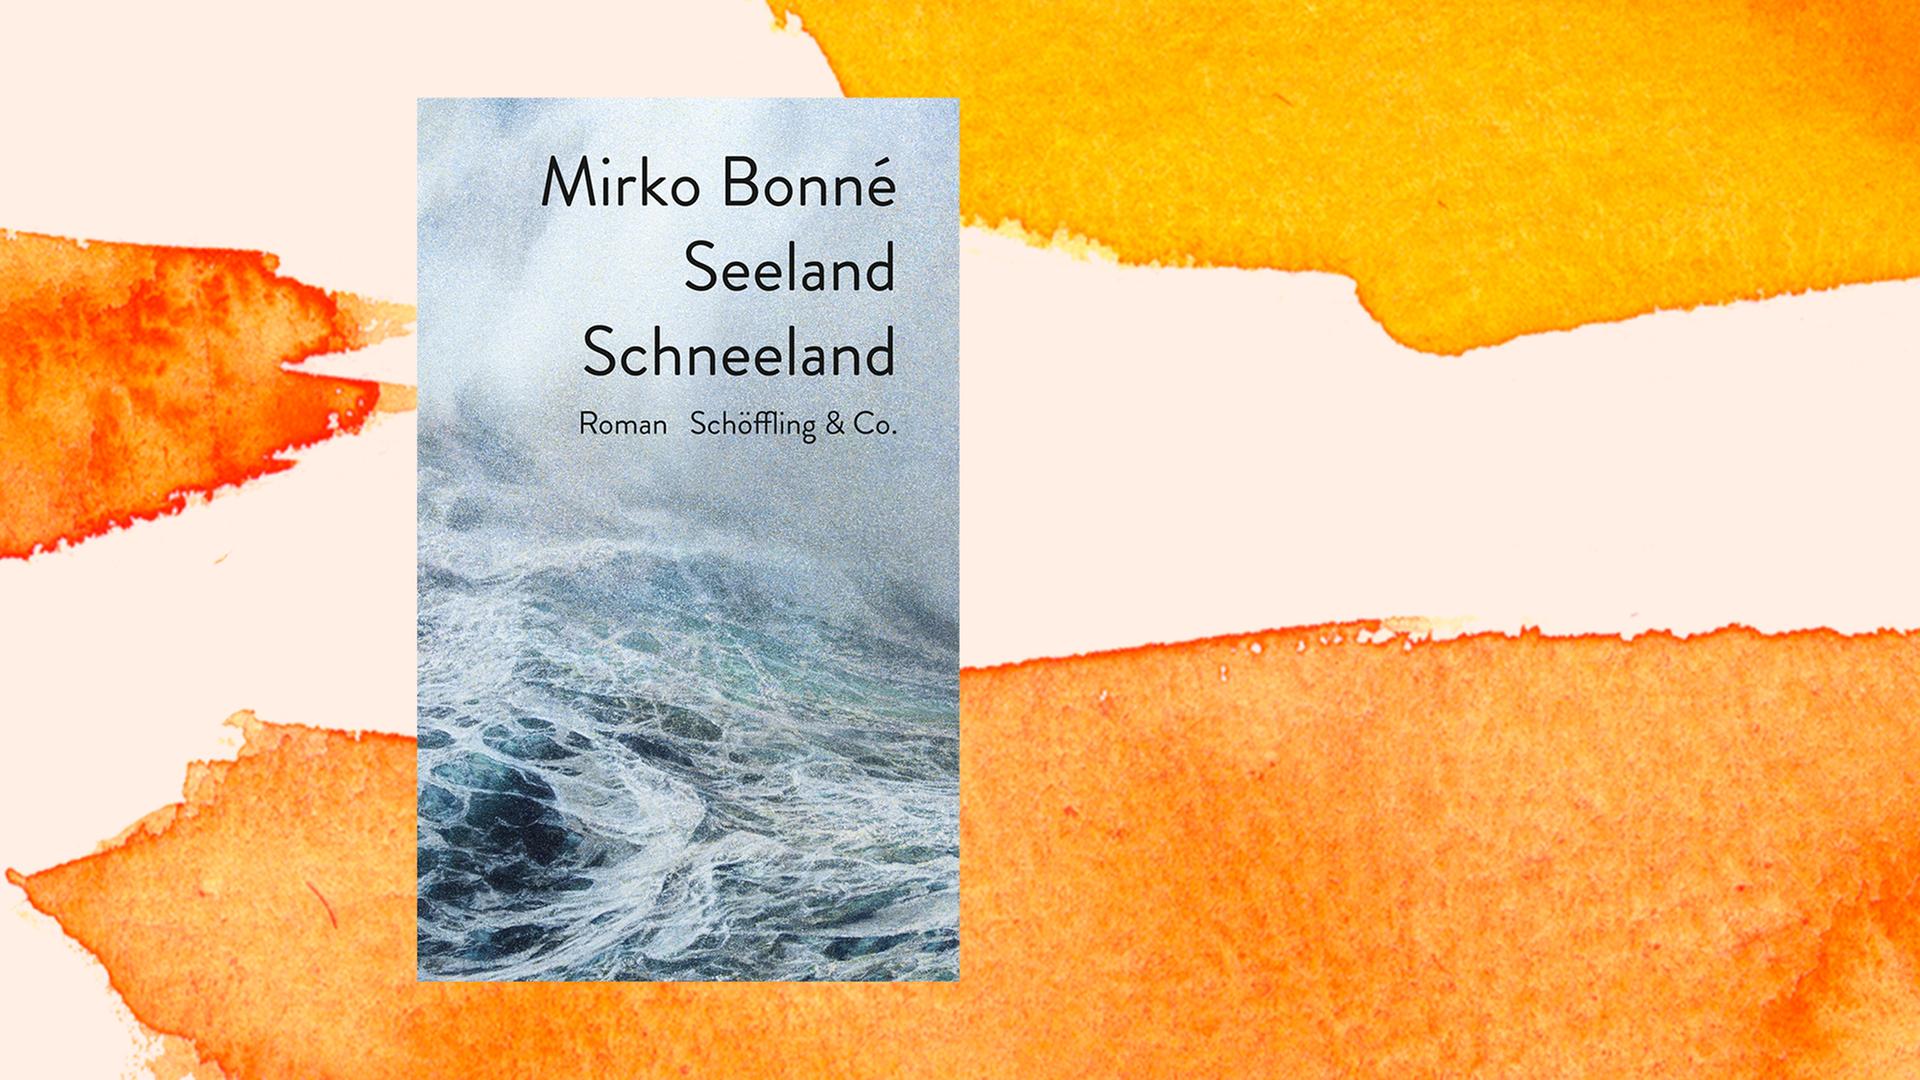 Buchcover von Mirko Bonné: "Seeland Schneeland" Liebesgeschichte mit blindem Passagier, Schöffling & Co, 2021.